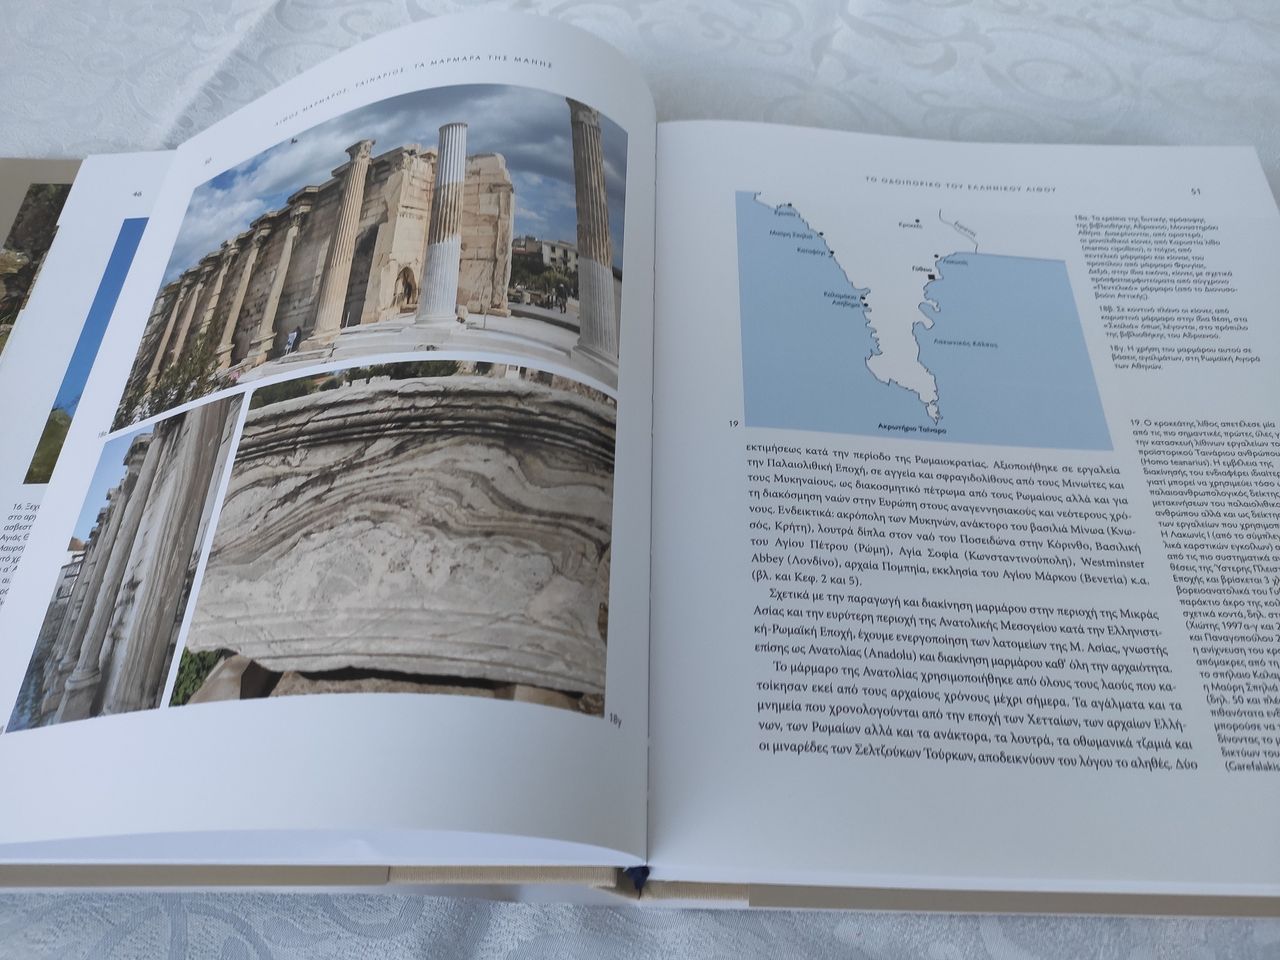 Η χρήση γνωστών τύπων μαρμάρων του Ελληνικού χώρου σε γνωστά μνημεία της αρχαιότητας. Ο χάρτης στη δεξιά σελίδα απεικονίζει τις θέσεις όπου έχει εντοπιστεί ο γνωστός από τους προϊστορικούς χρόνους “κροκεάτης “ λίθος .